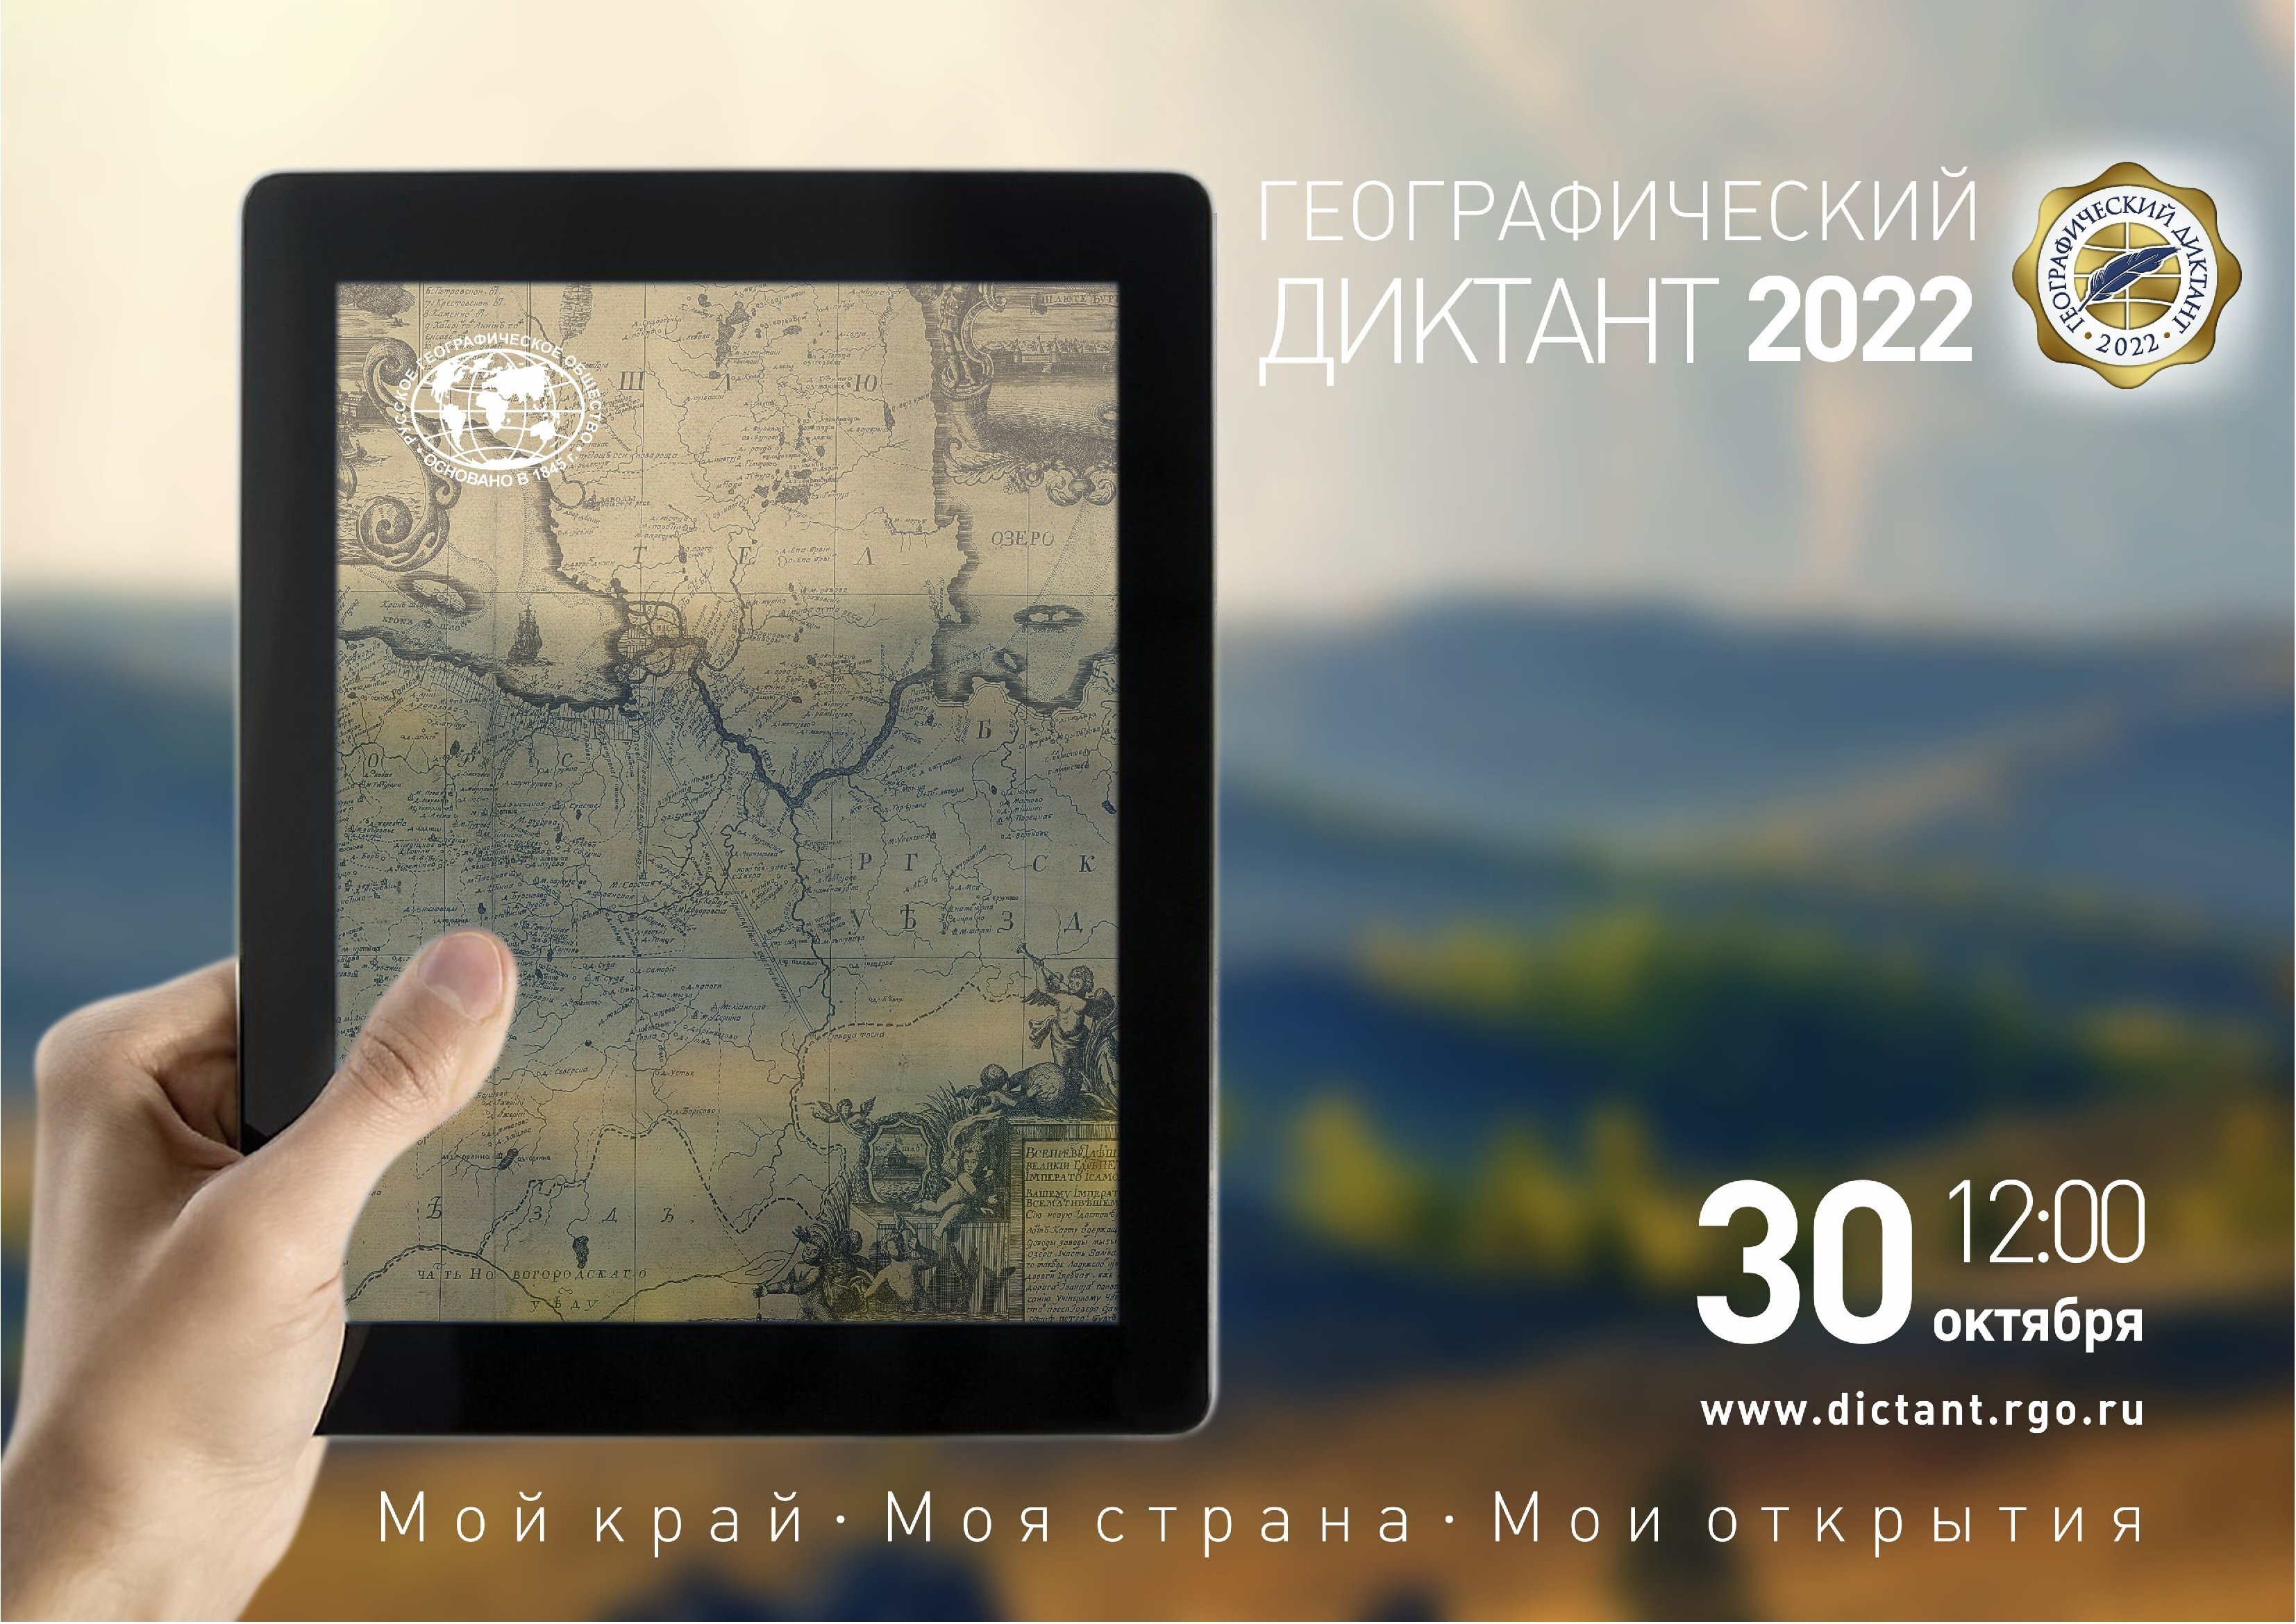 Географический диктант - 2022.